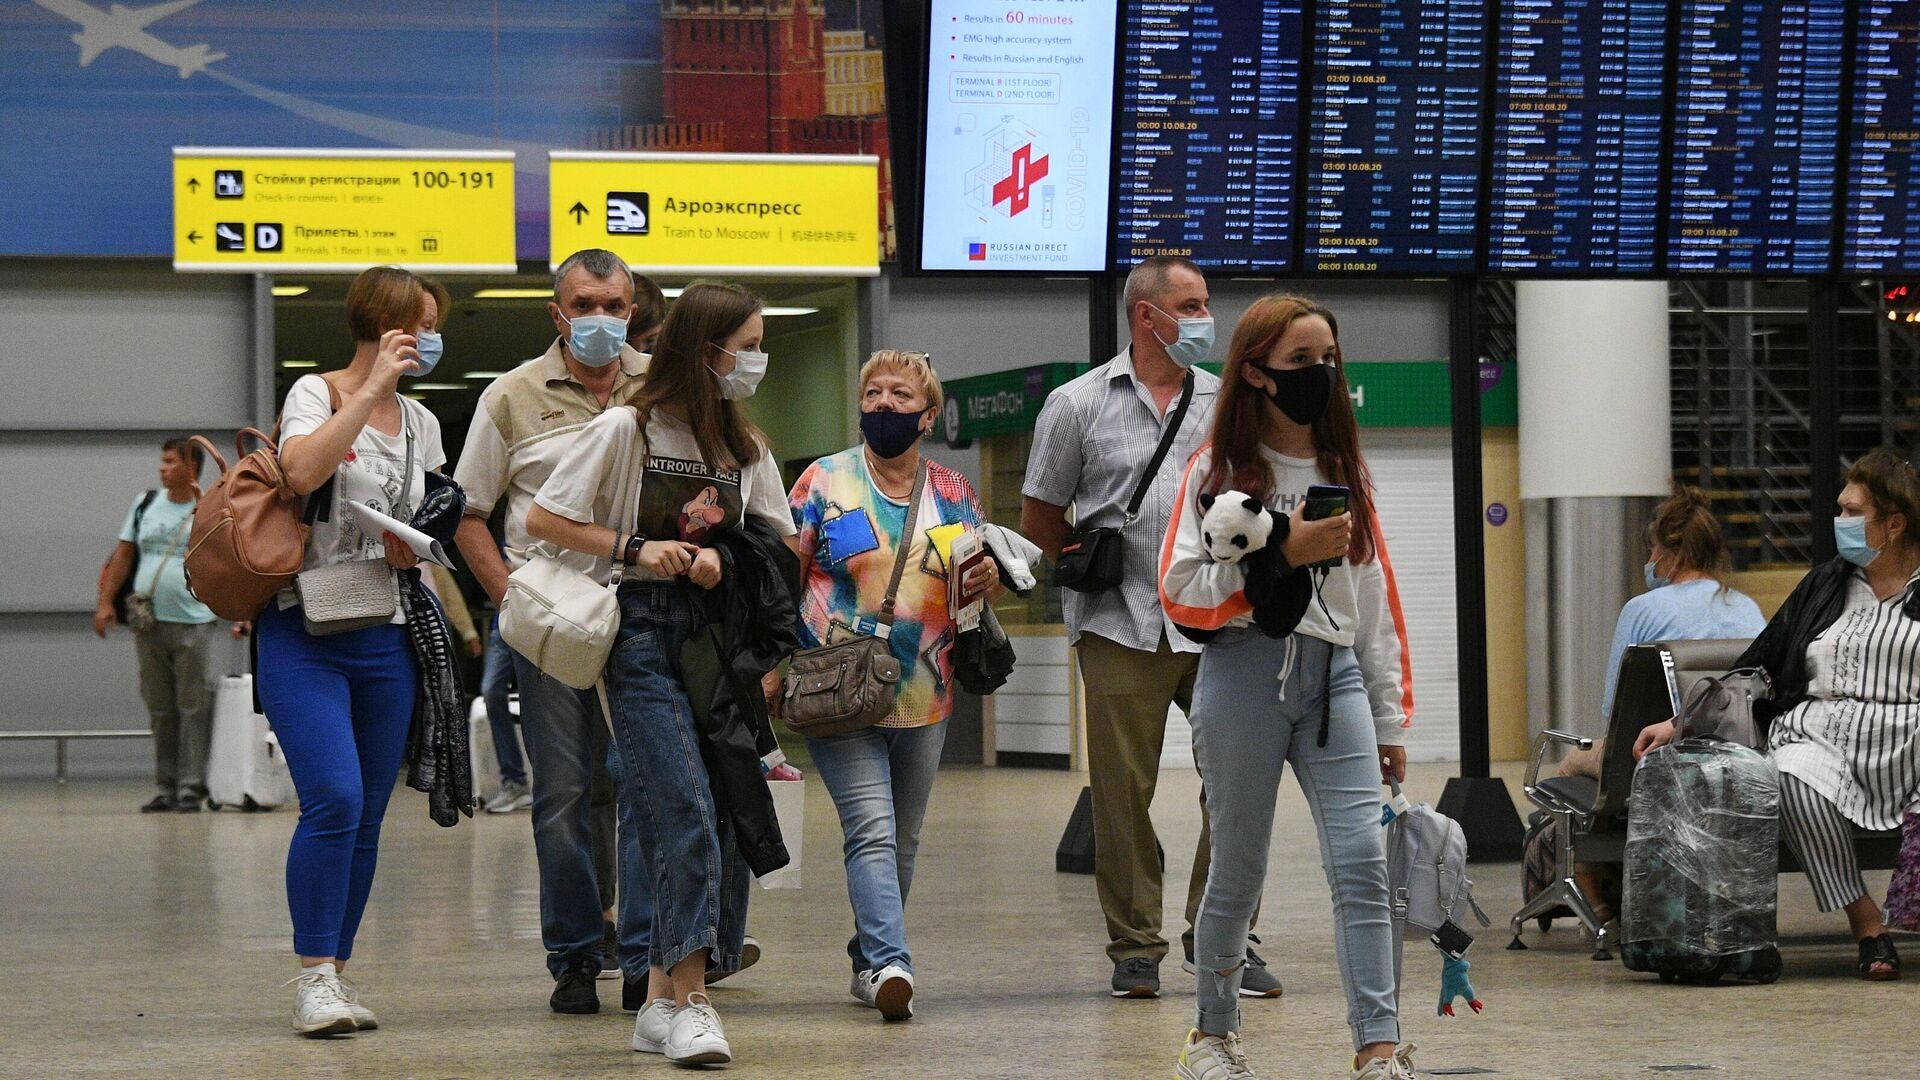 Риа новости россия главные. Российские туристы в Европе. Туристы в аэропорту. Аэропорт. Российские граждане в аэропорту за границей.